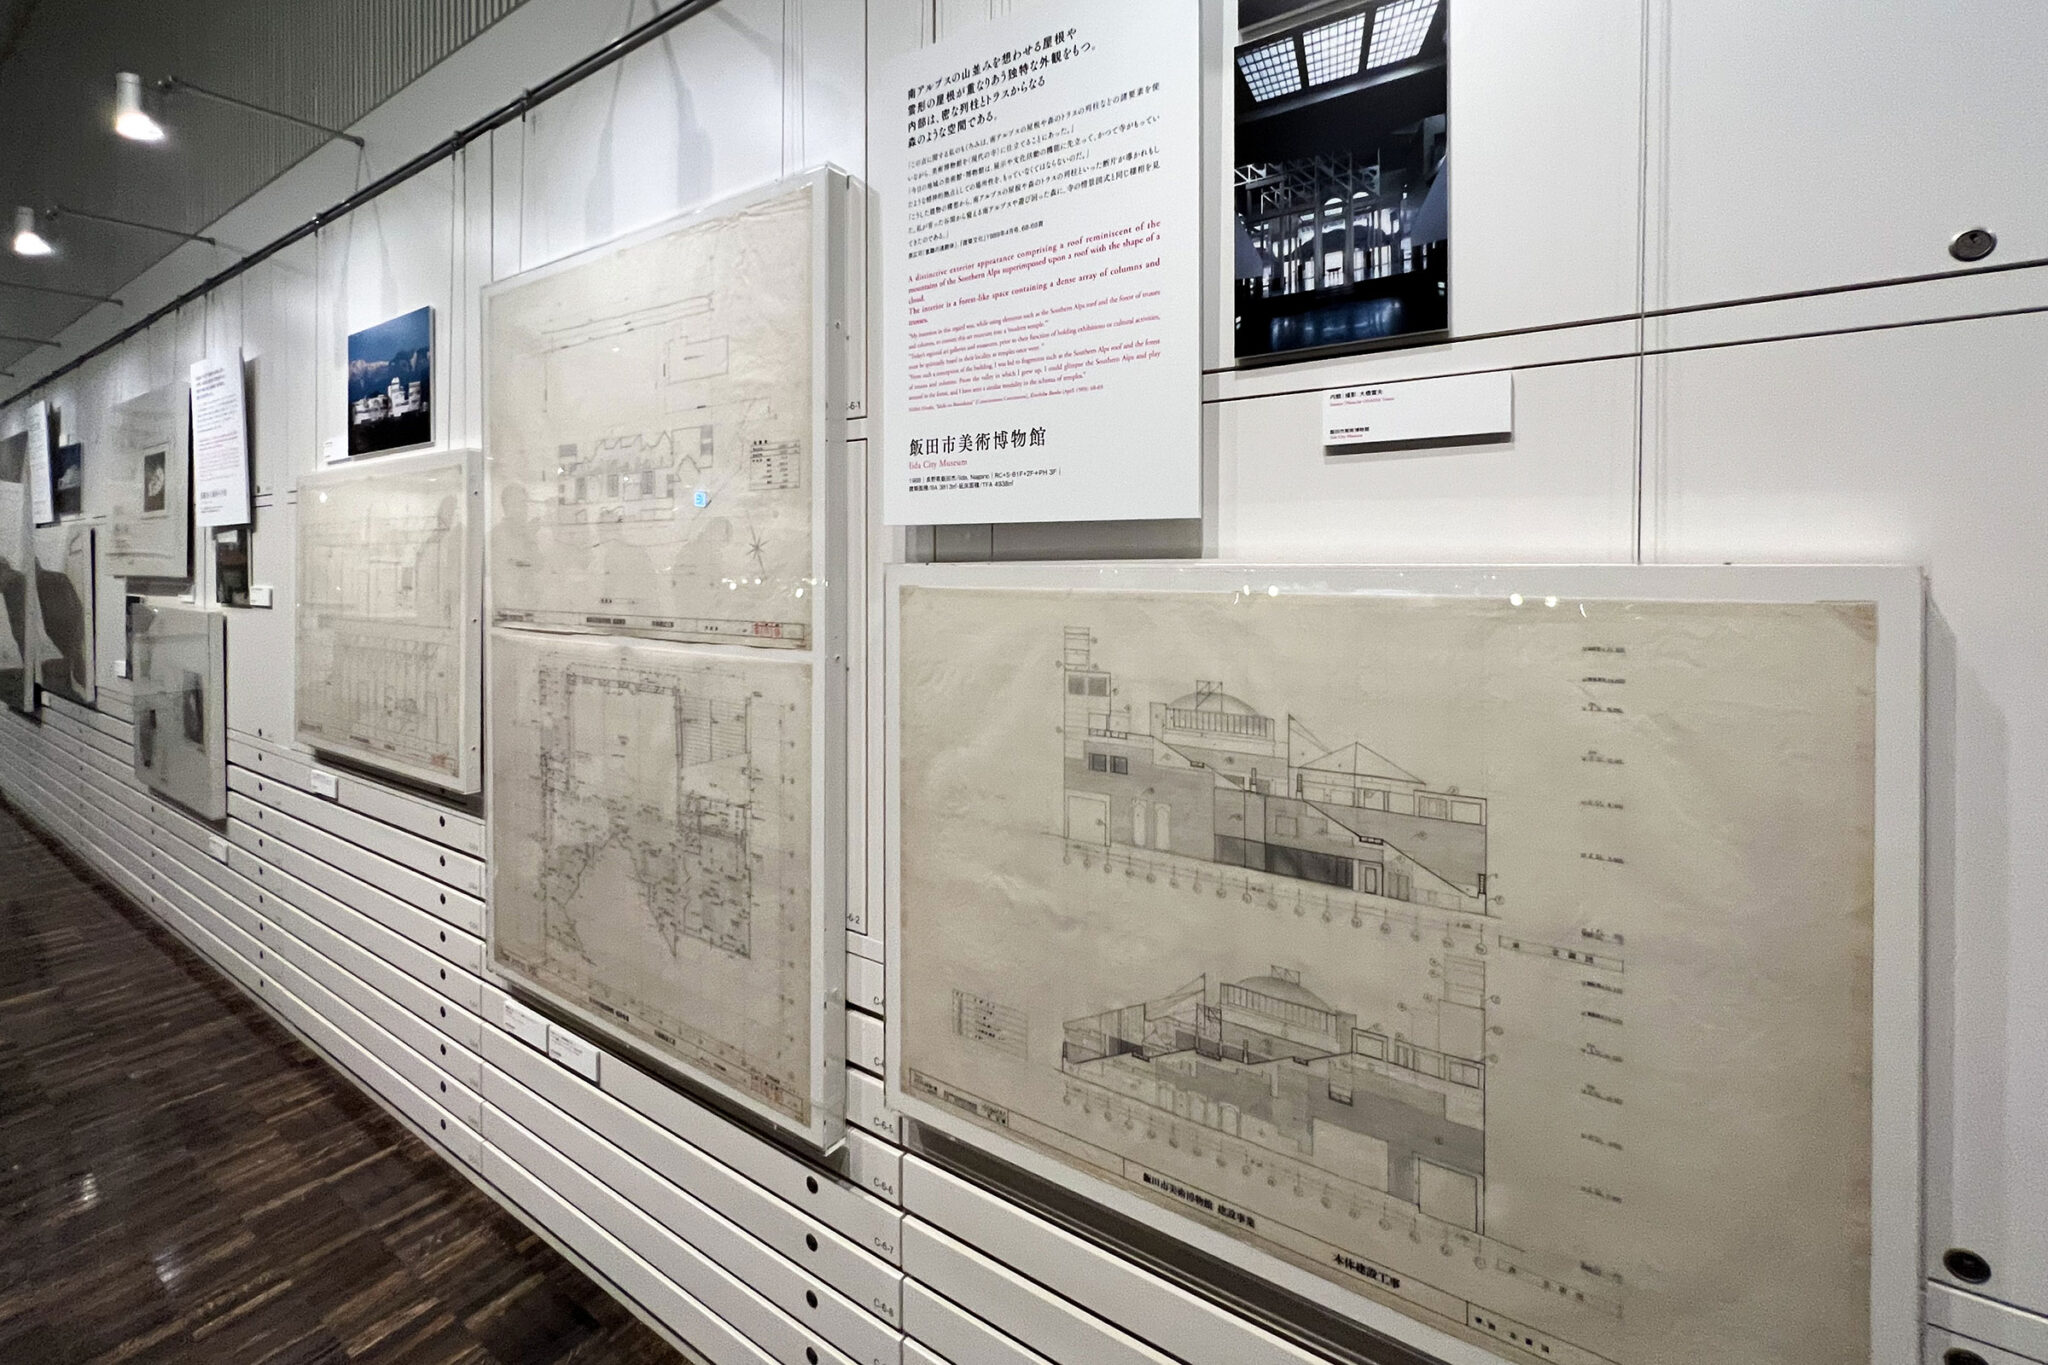 原広司の、国立近現代建築資料館での展覧会「建築に何が可能か」の 